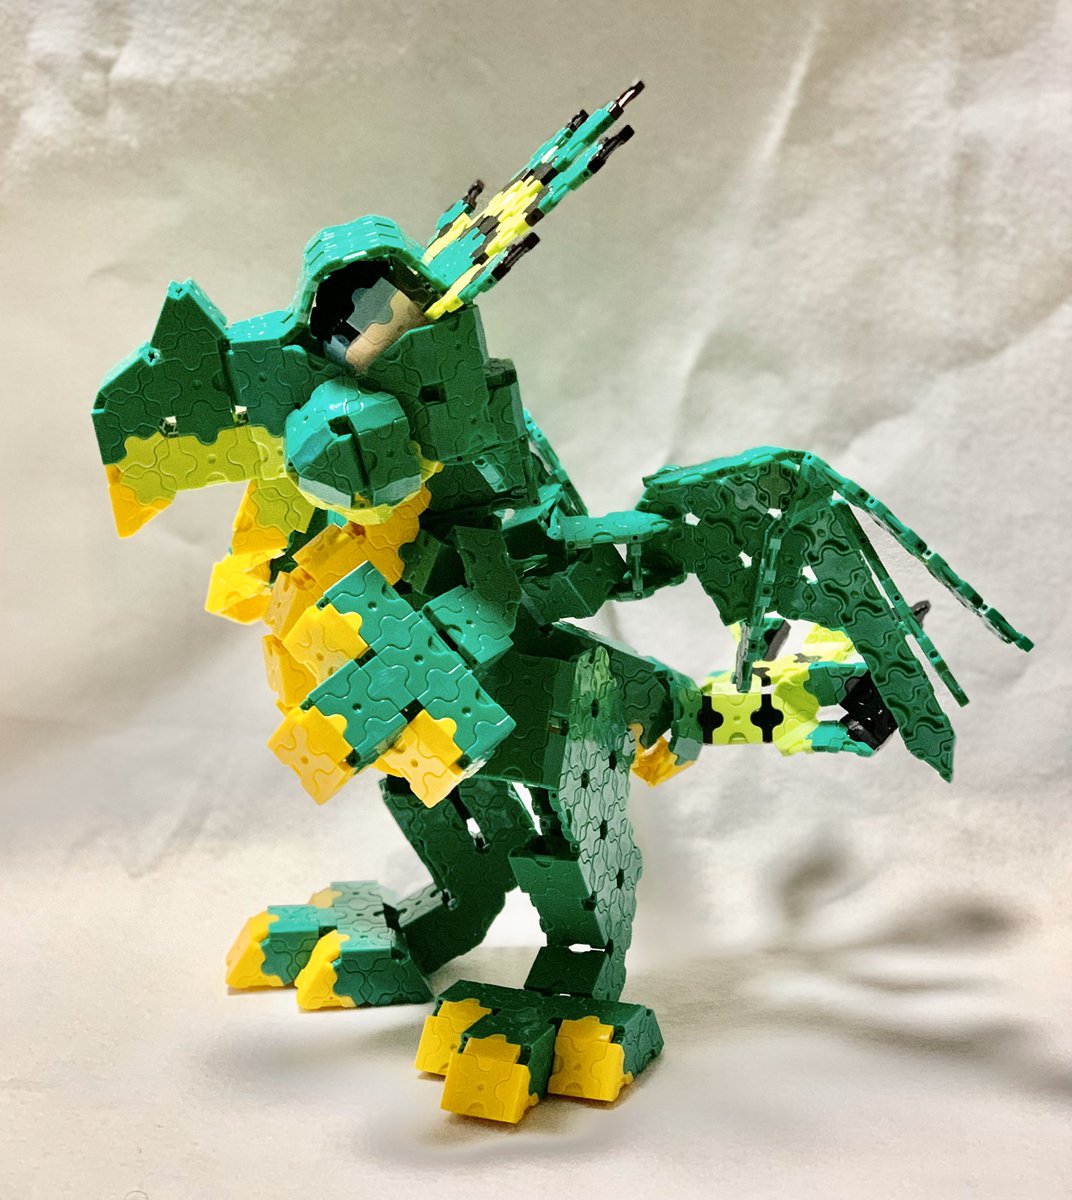 緒方先生 Ken01 さんのドラゴンキッド作らせて頂きました 折角なので緑にカラーリング変更しました 新作楽しみにしています Laq Dragon ドラゴン